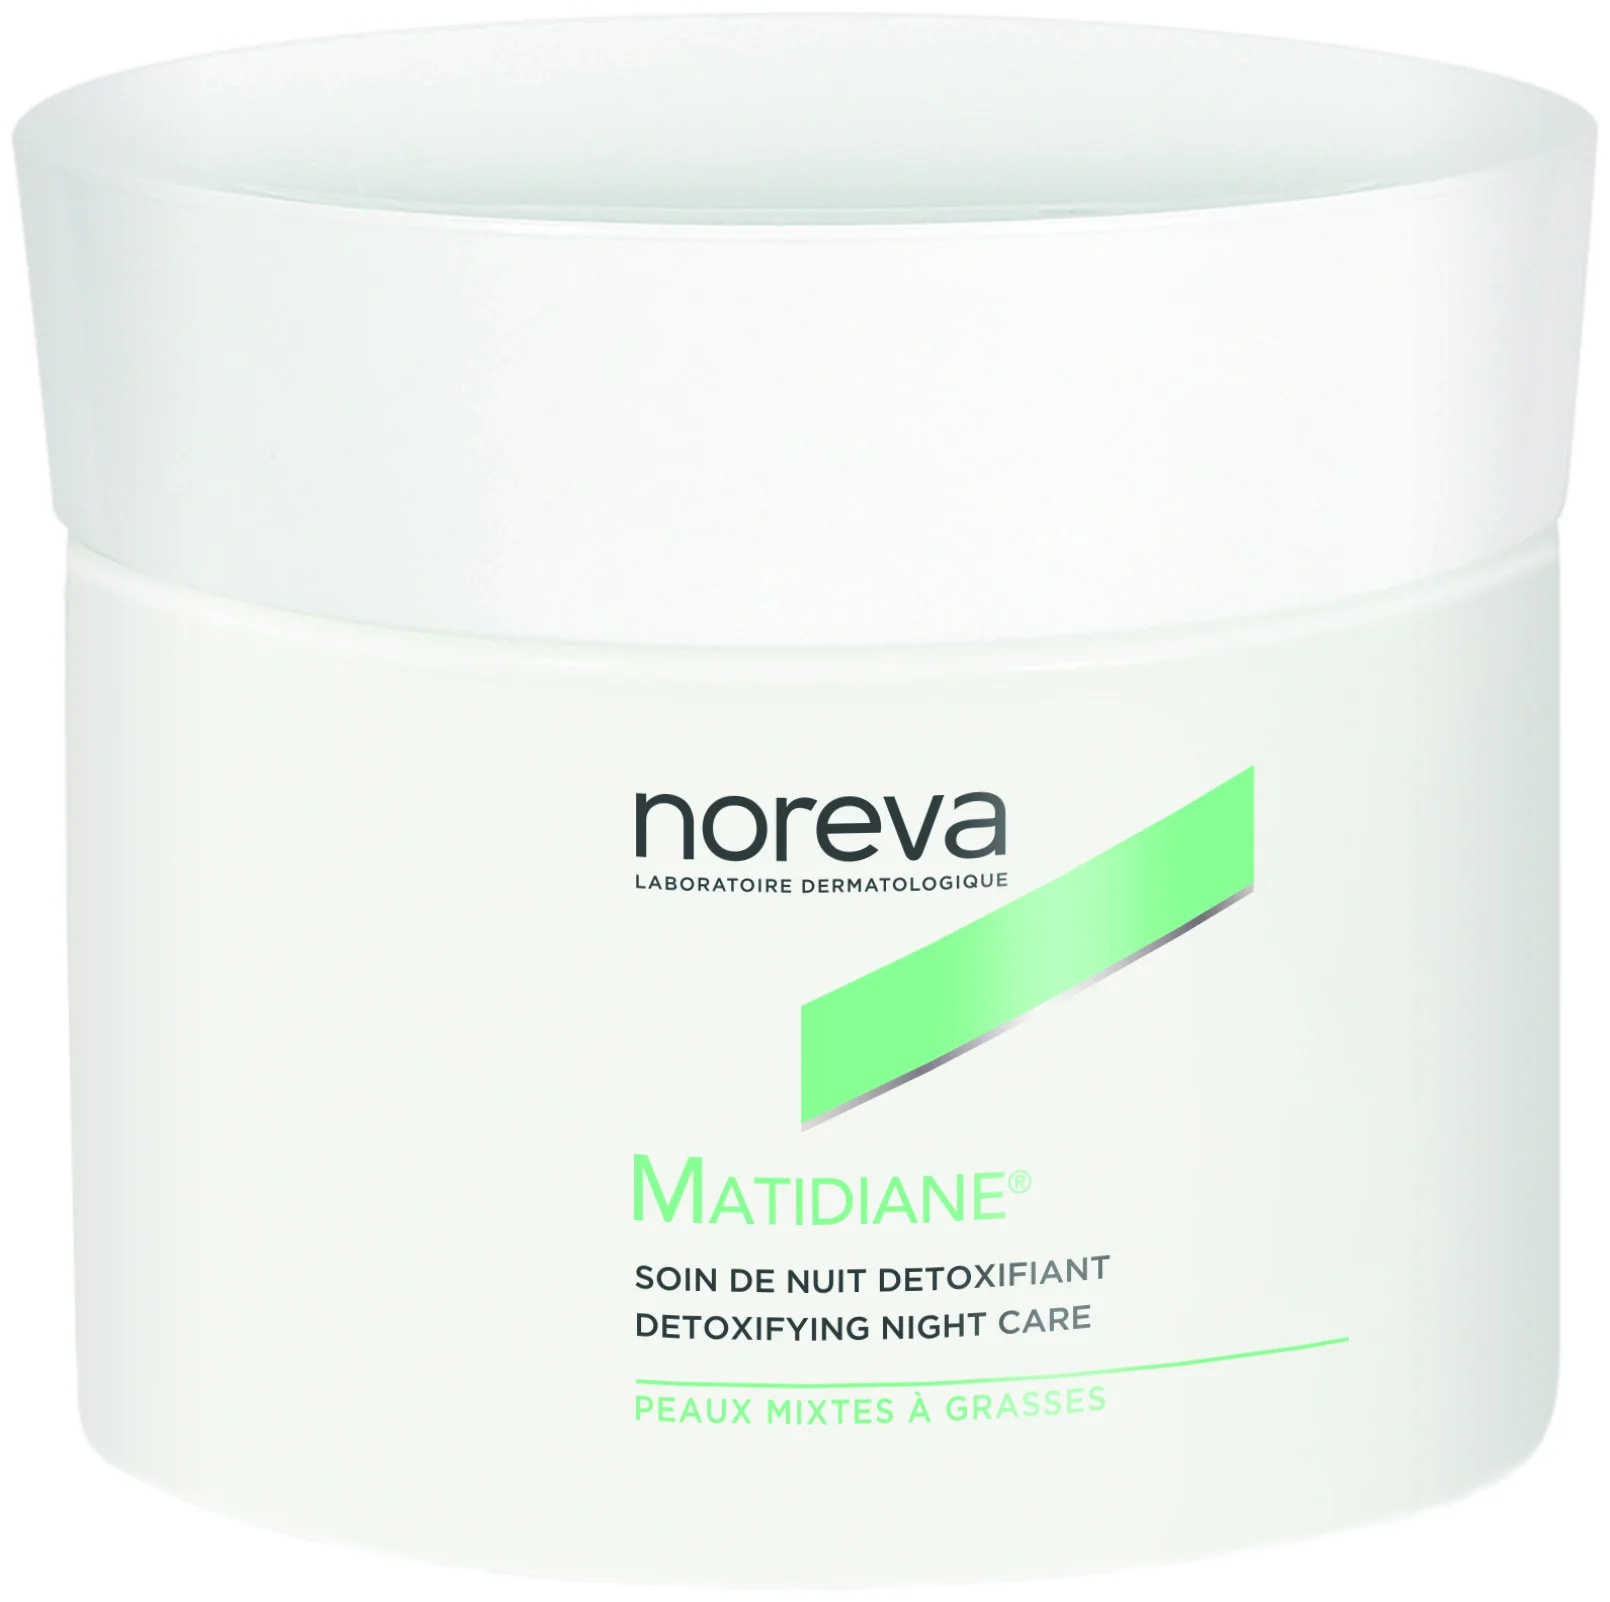 Noreva Matidiane Detoxifying Night Care